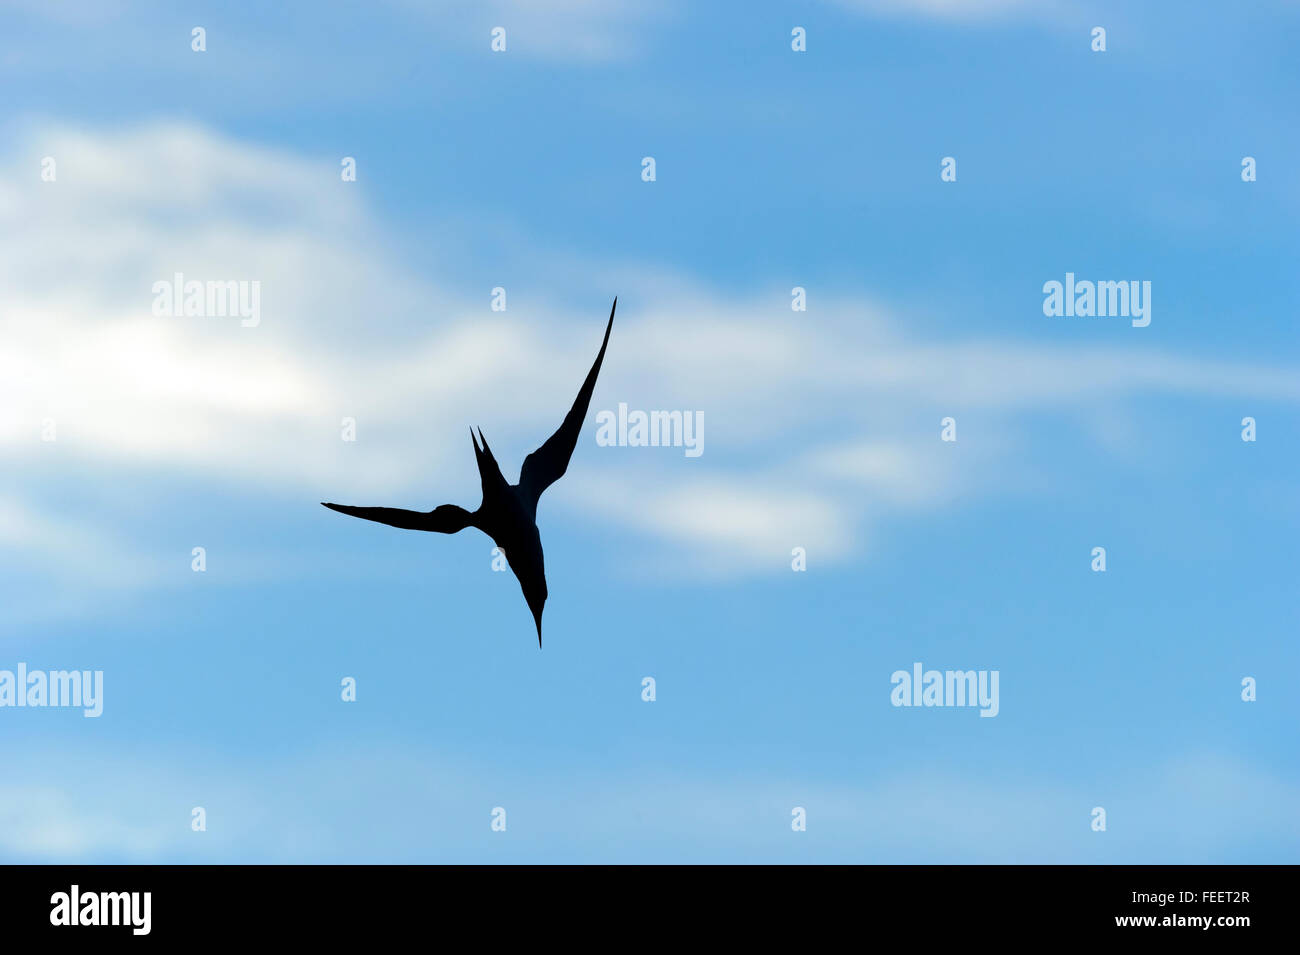 Silhouette di uccello è un ingrandimento di un uccello che sta volando ad alta velocità impostata contro un bianco e blu nube riempiva il cielo di giorno. Foto Stock